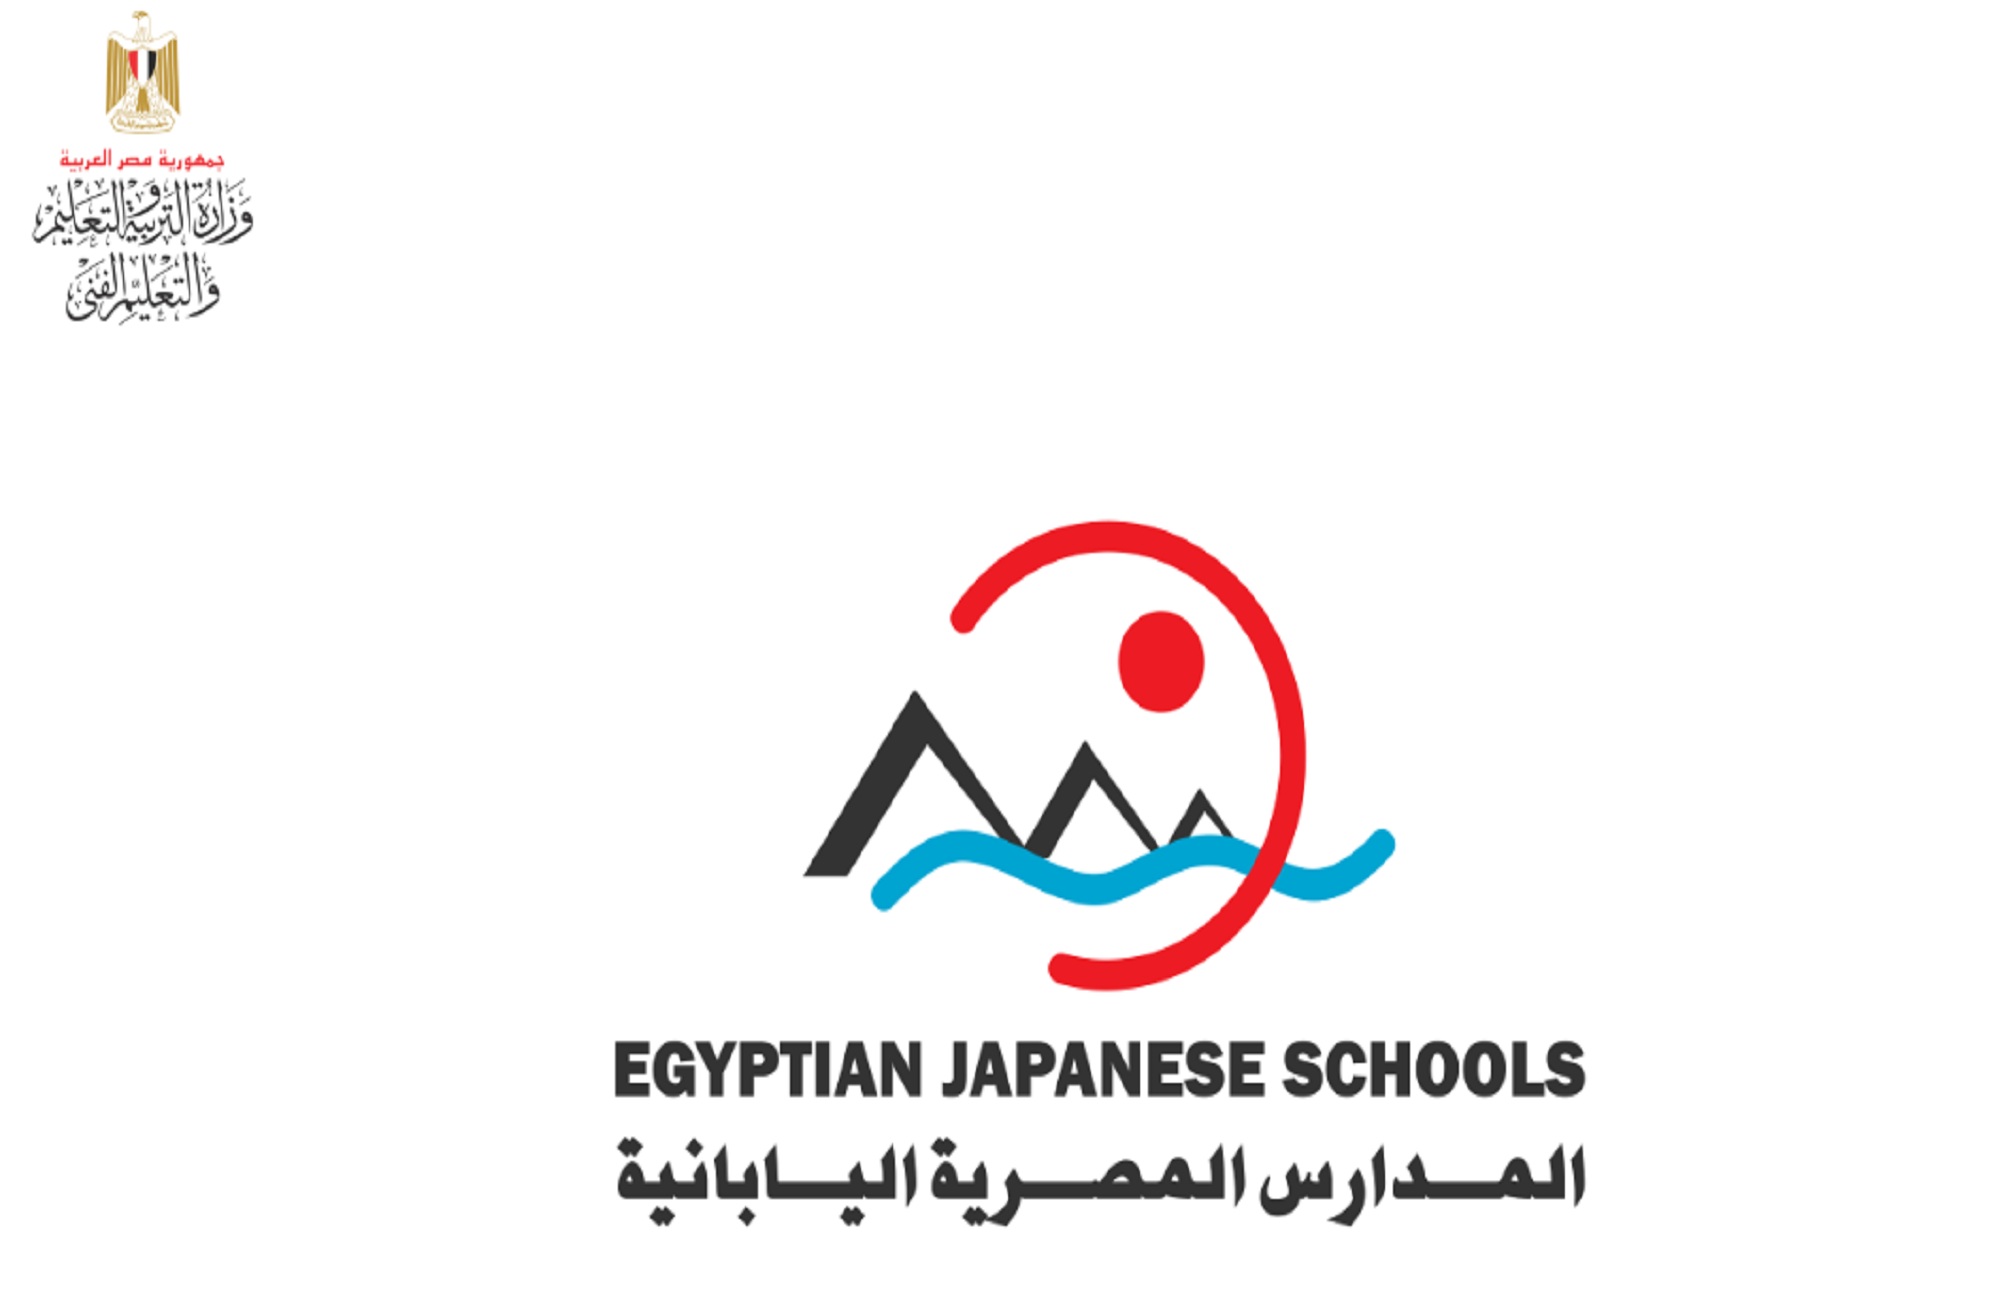 التوكاتسو الياباني والعمل التطوعي شرط الالتحاق بالمدارس اليابانية المصرية